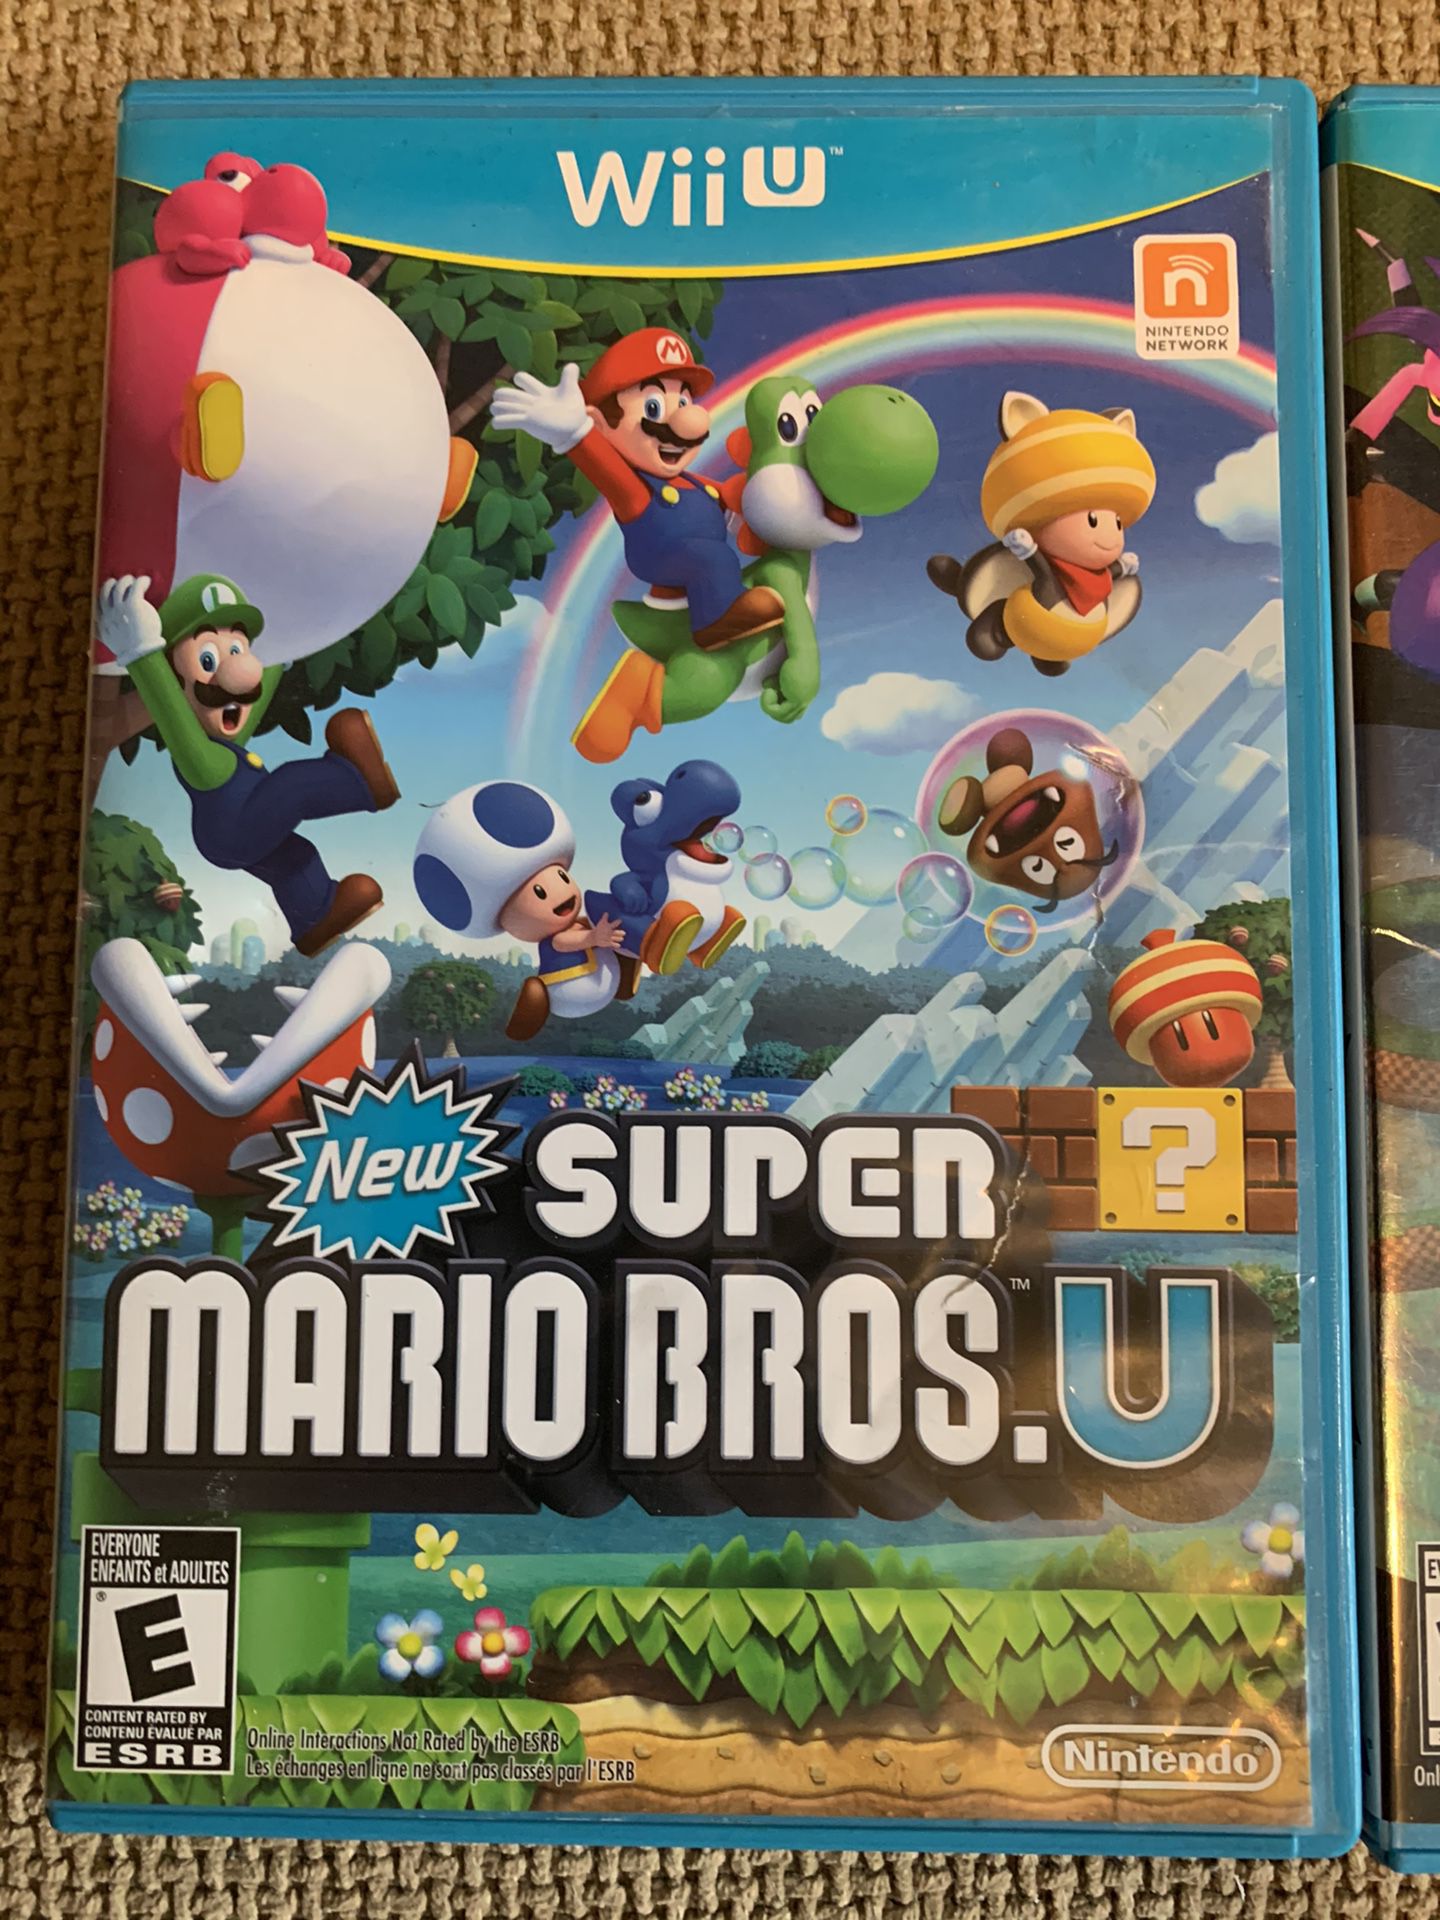 Wii U Nintendo games